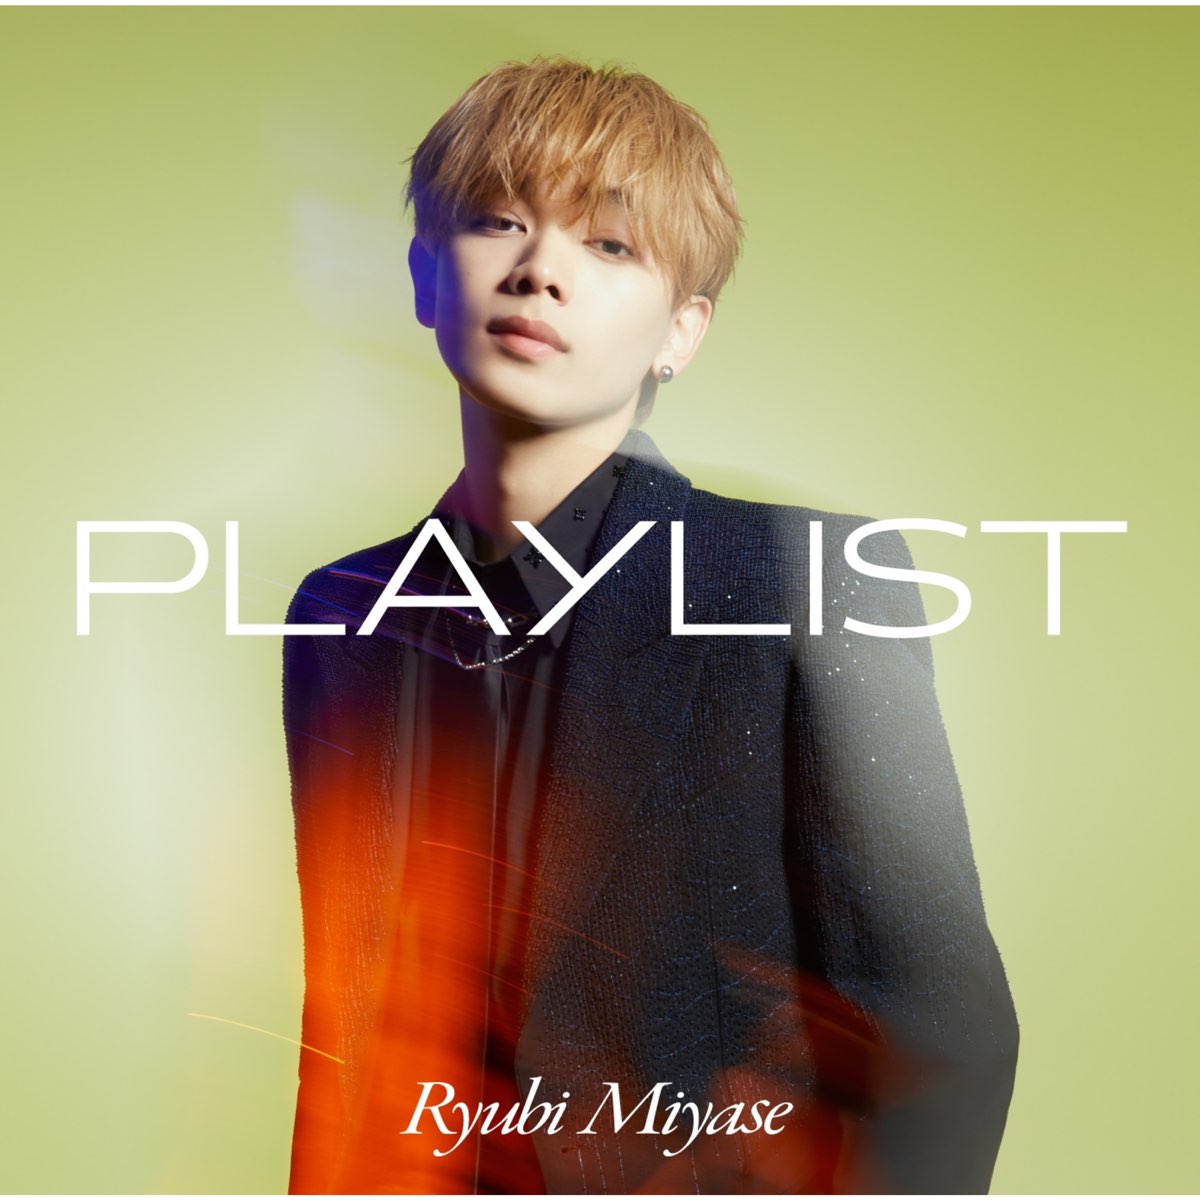 ‎PLAYLIST - Album by Ryubi Miyase - Apple Music